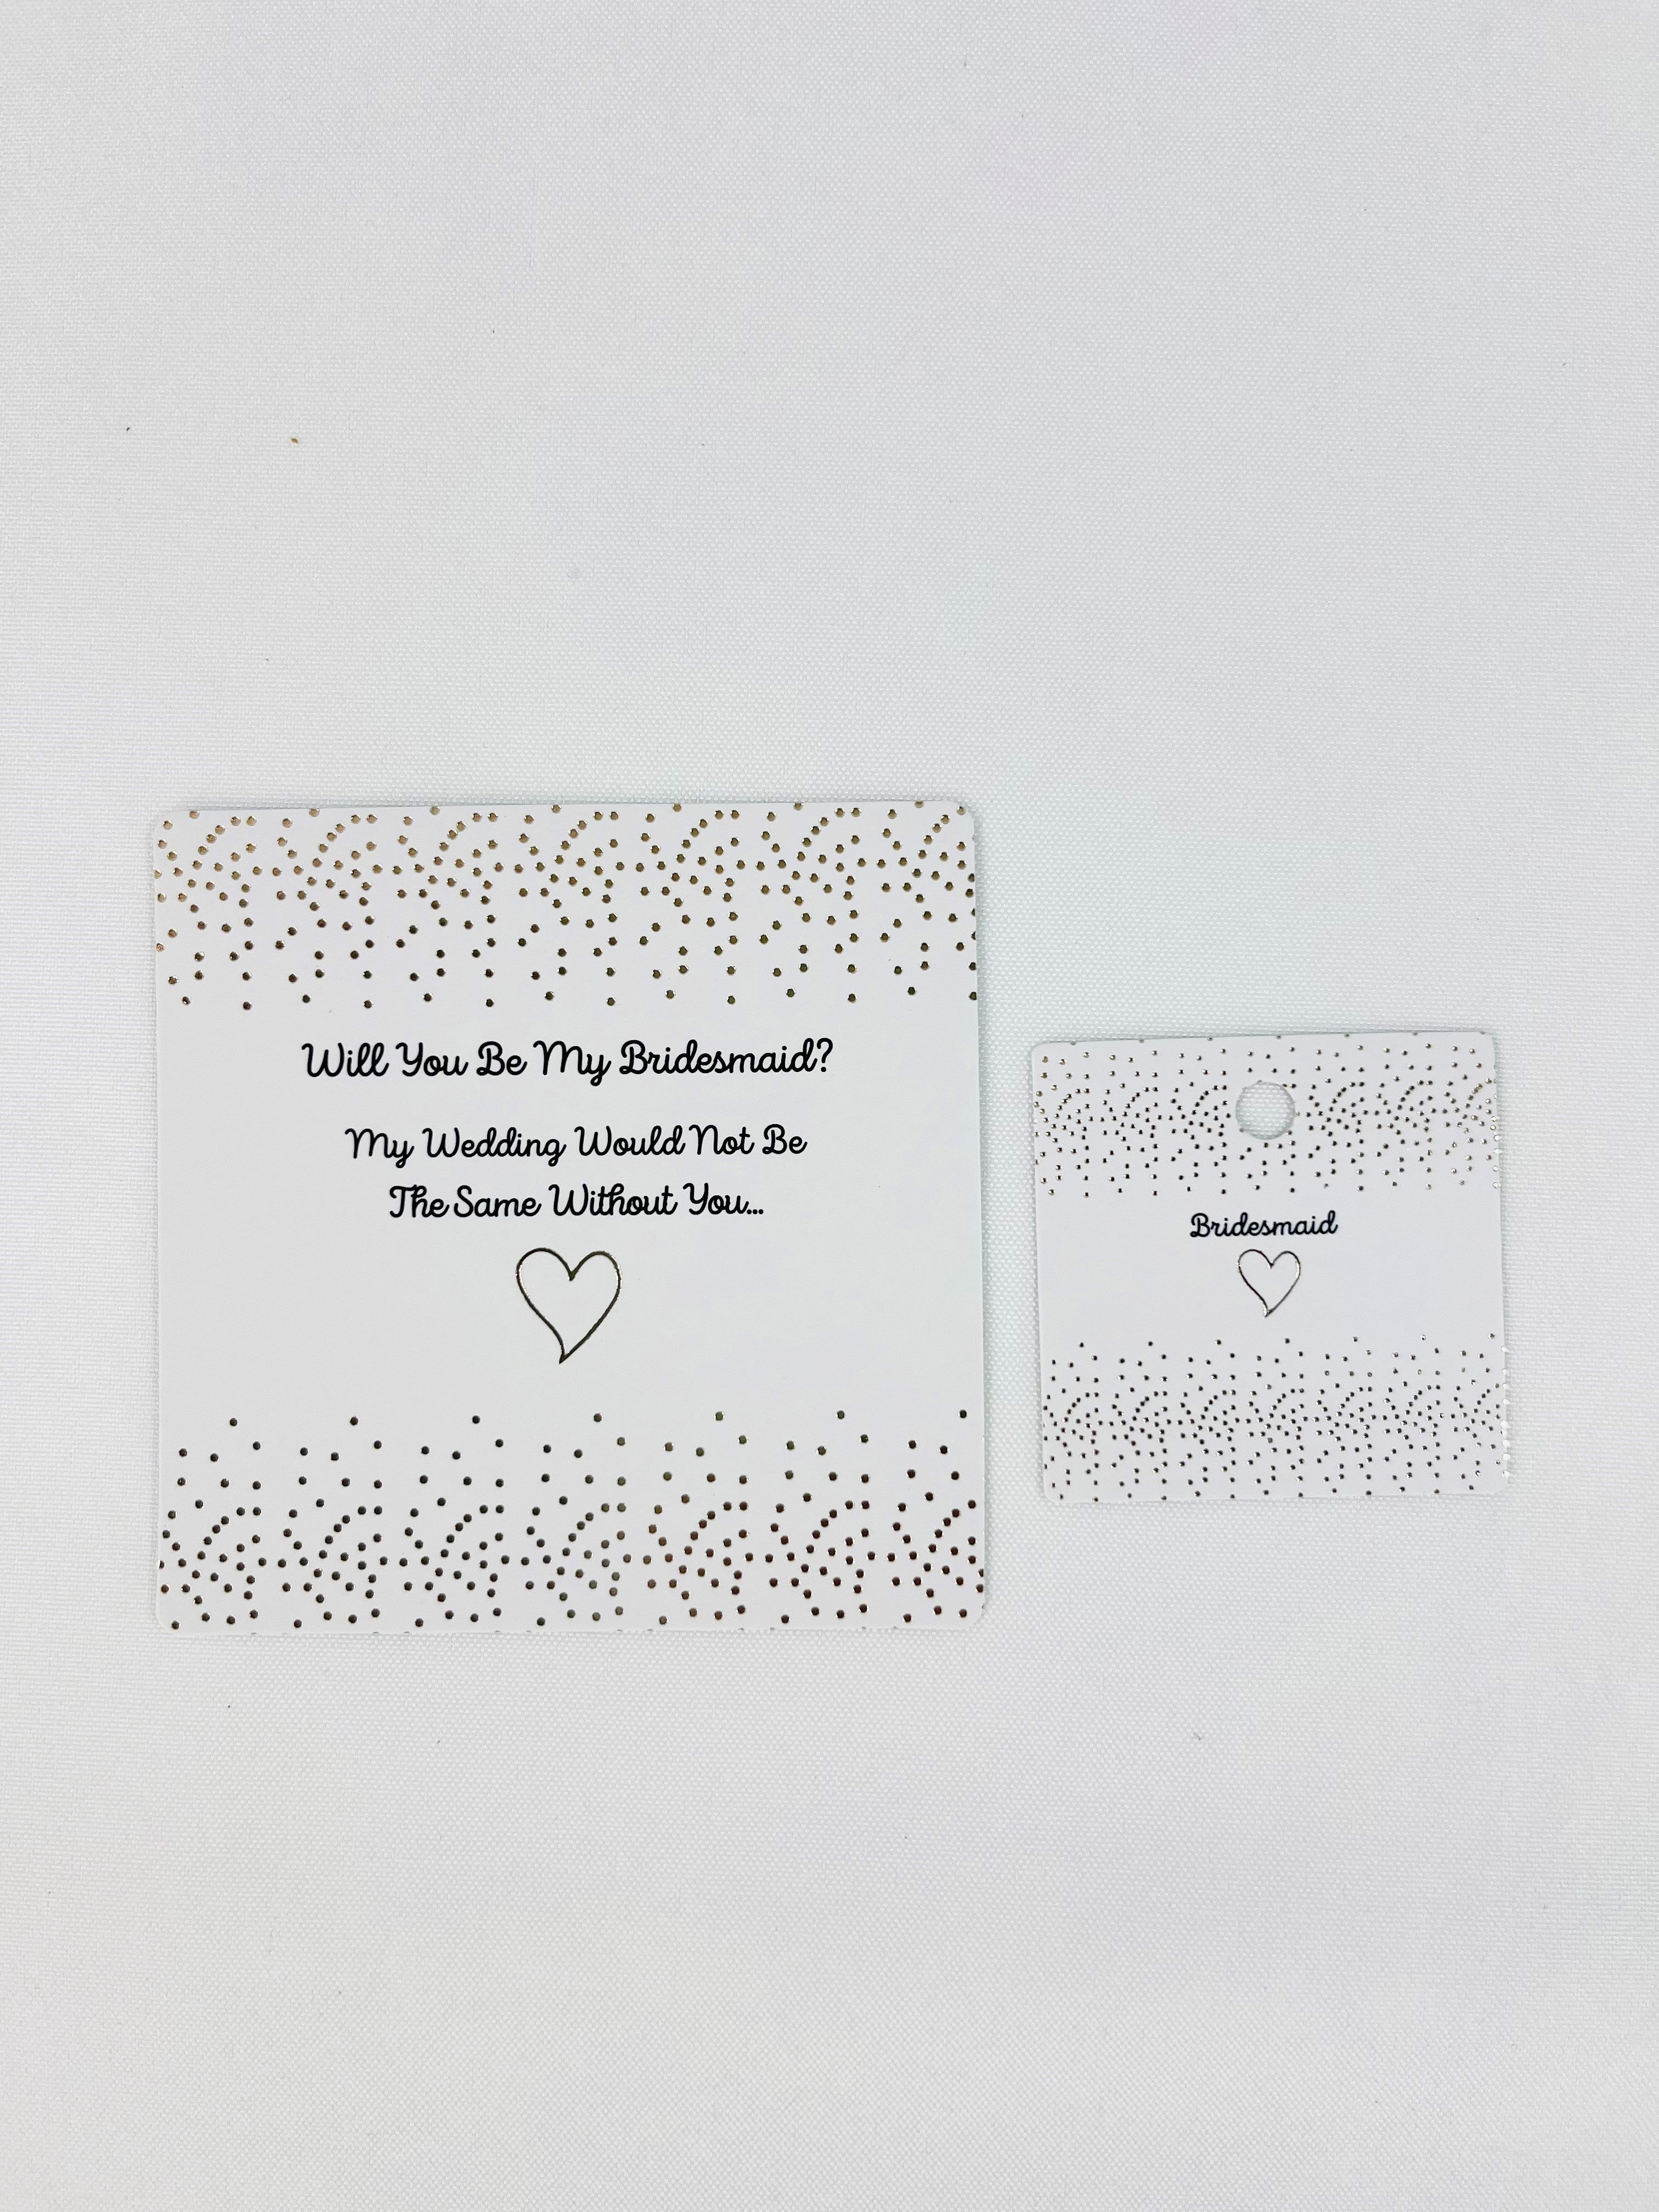 Bridesmaid Gift Tags & Bridesmaid Proposal Cards